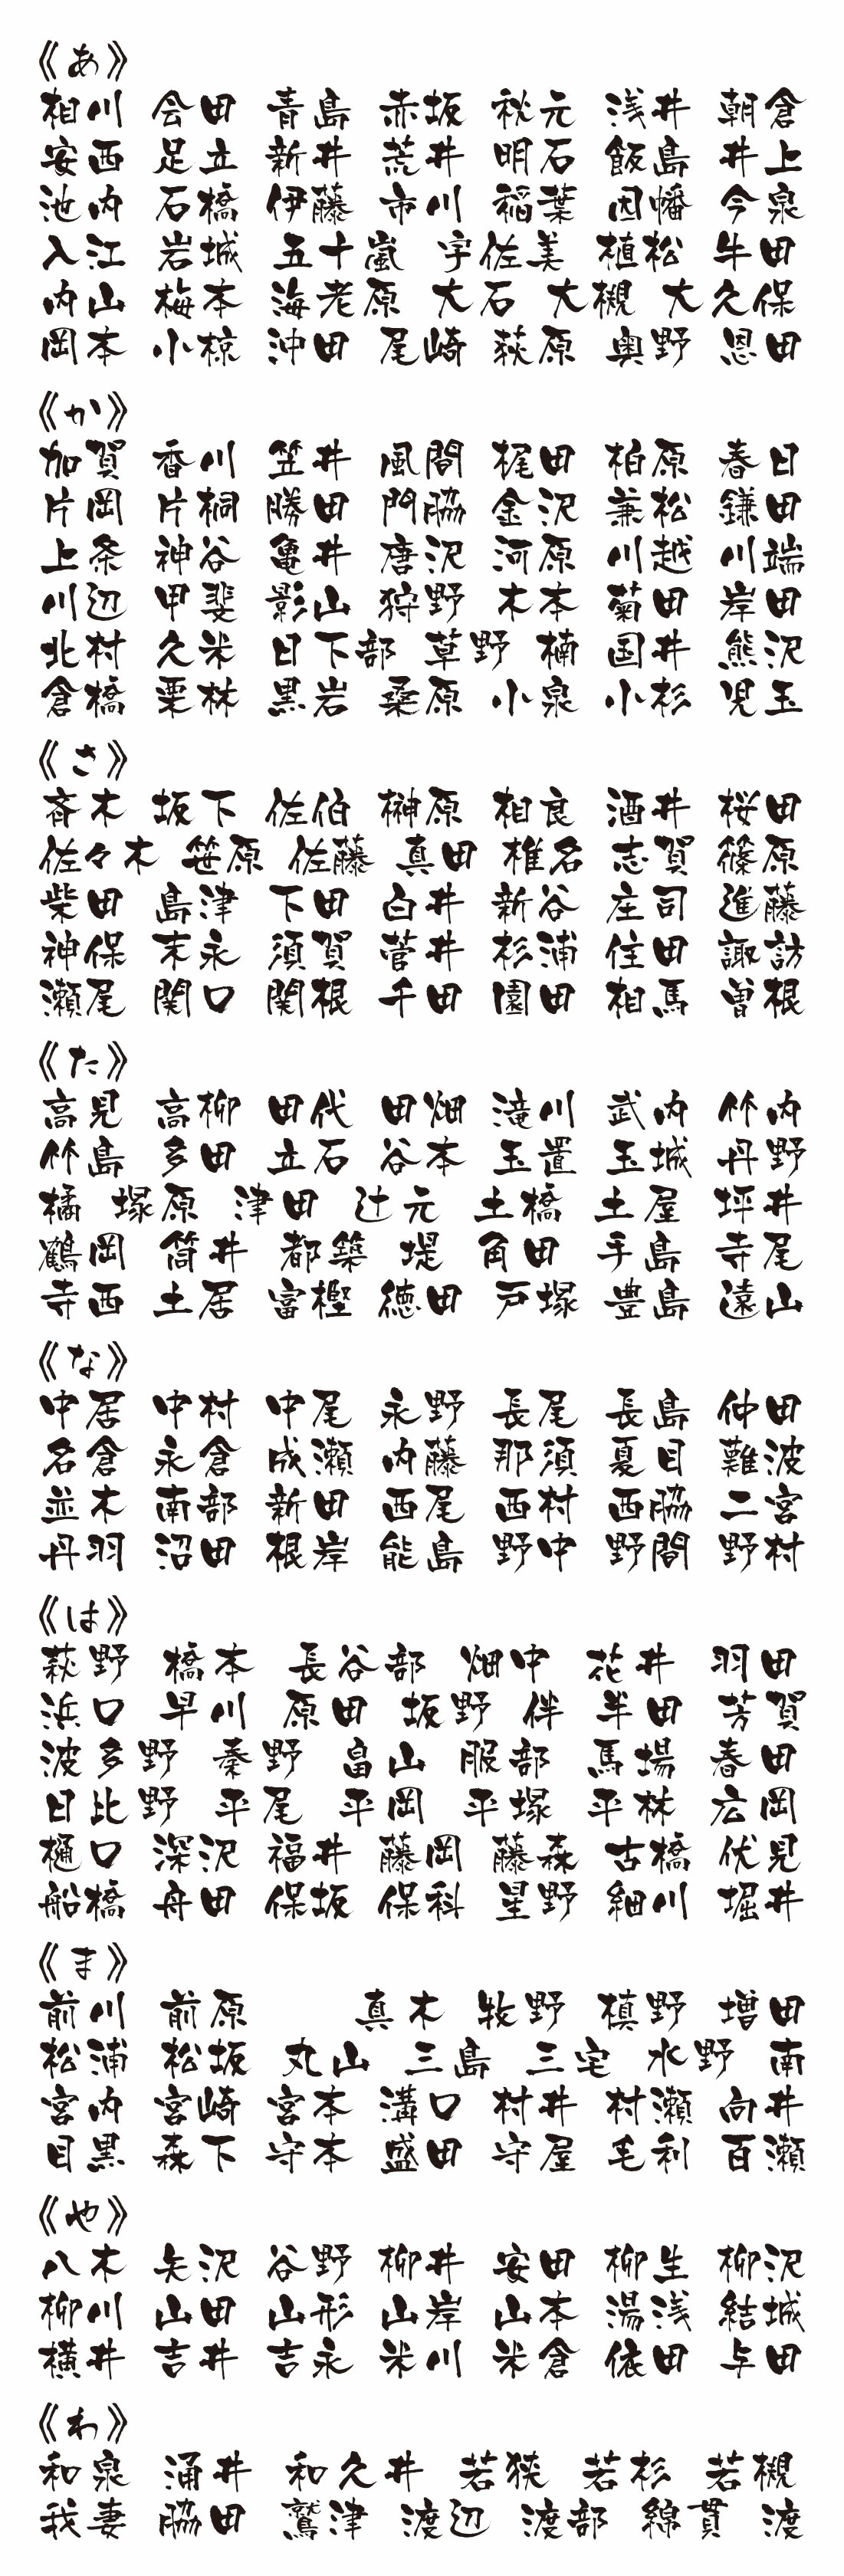 表札 書体 おすすめ 人気 漢字 表和20